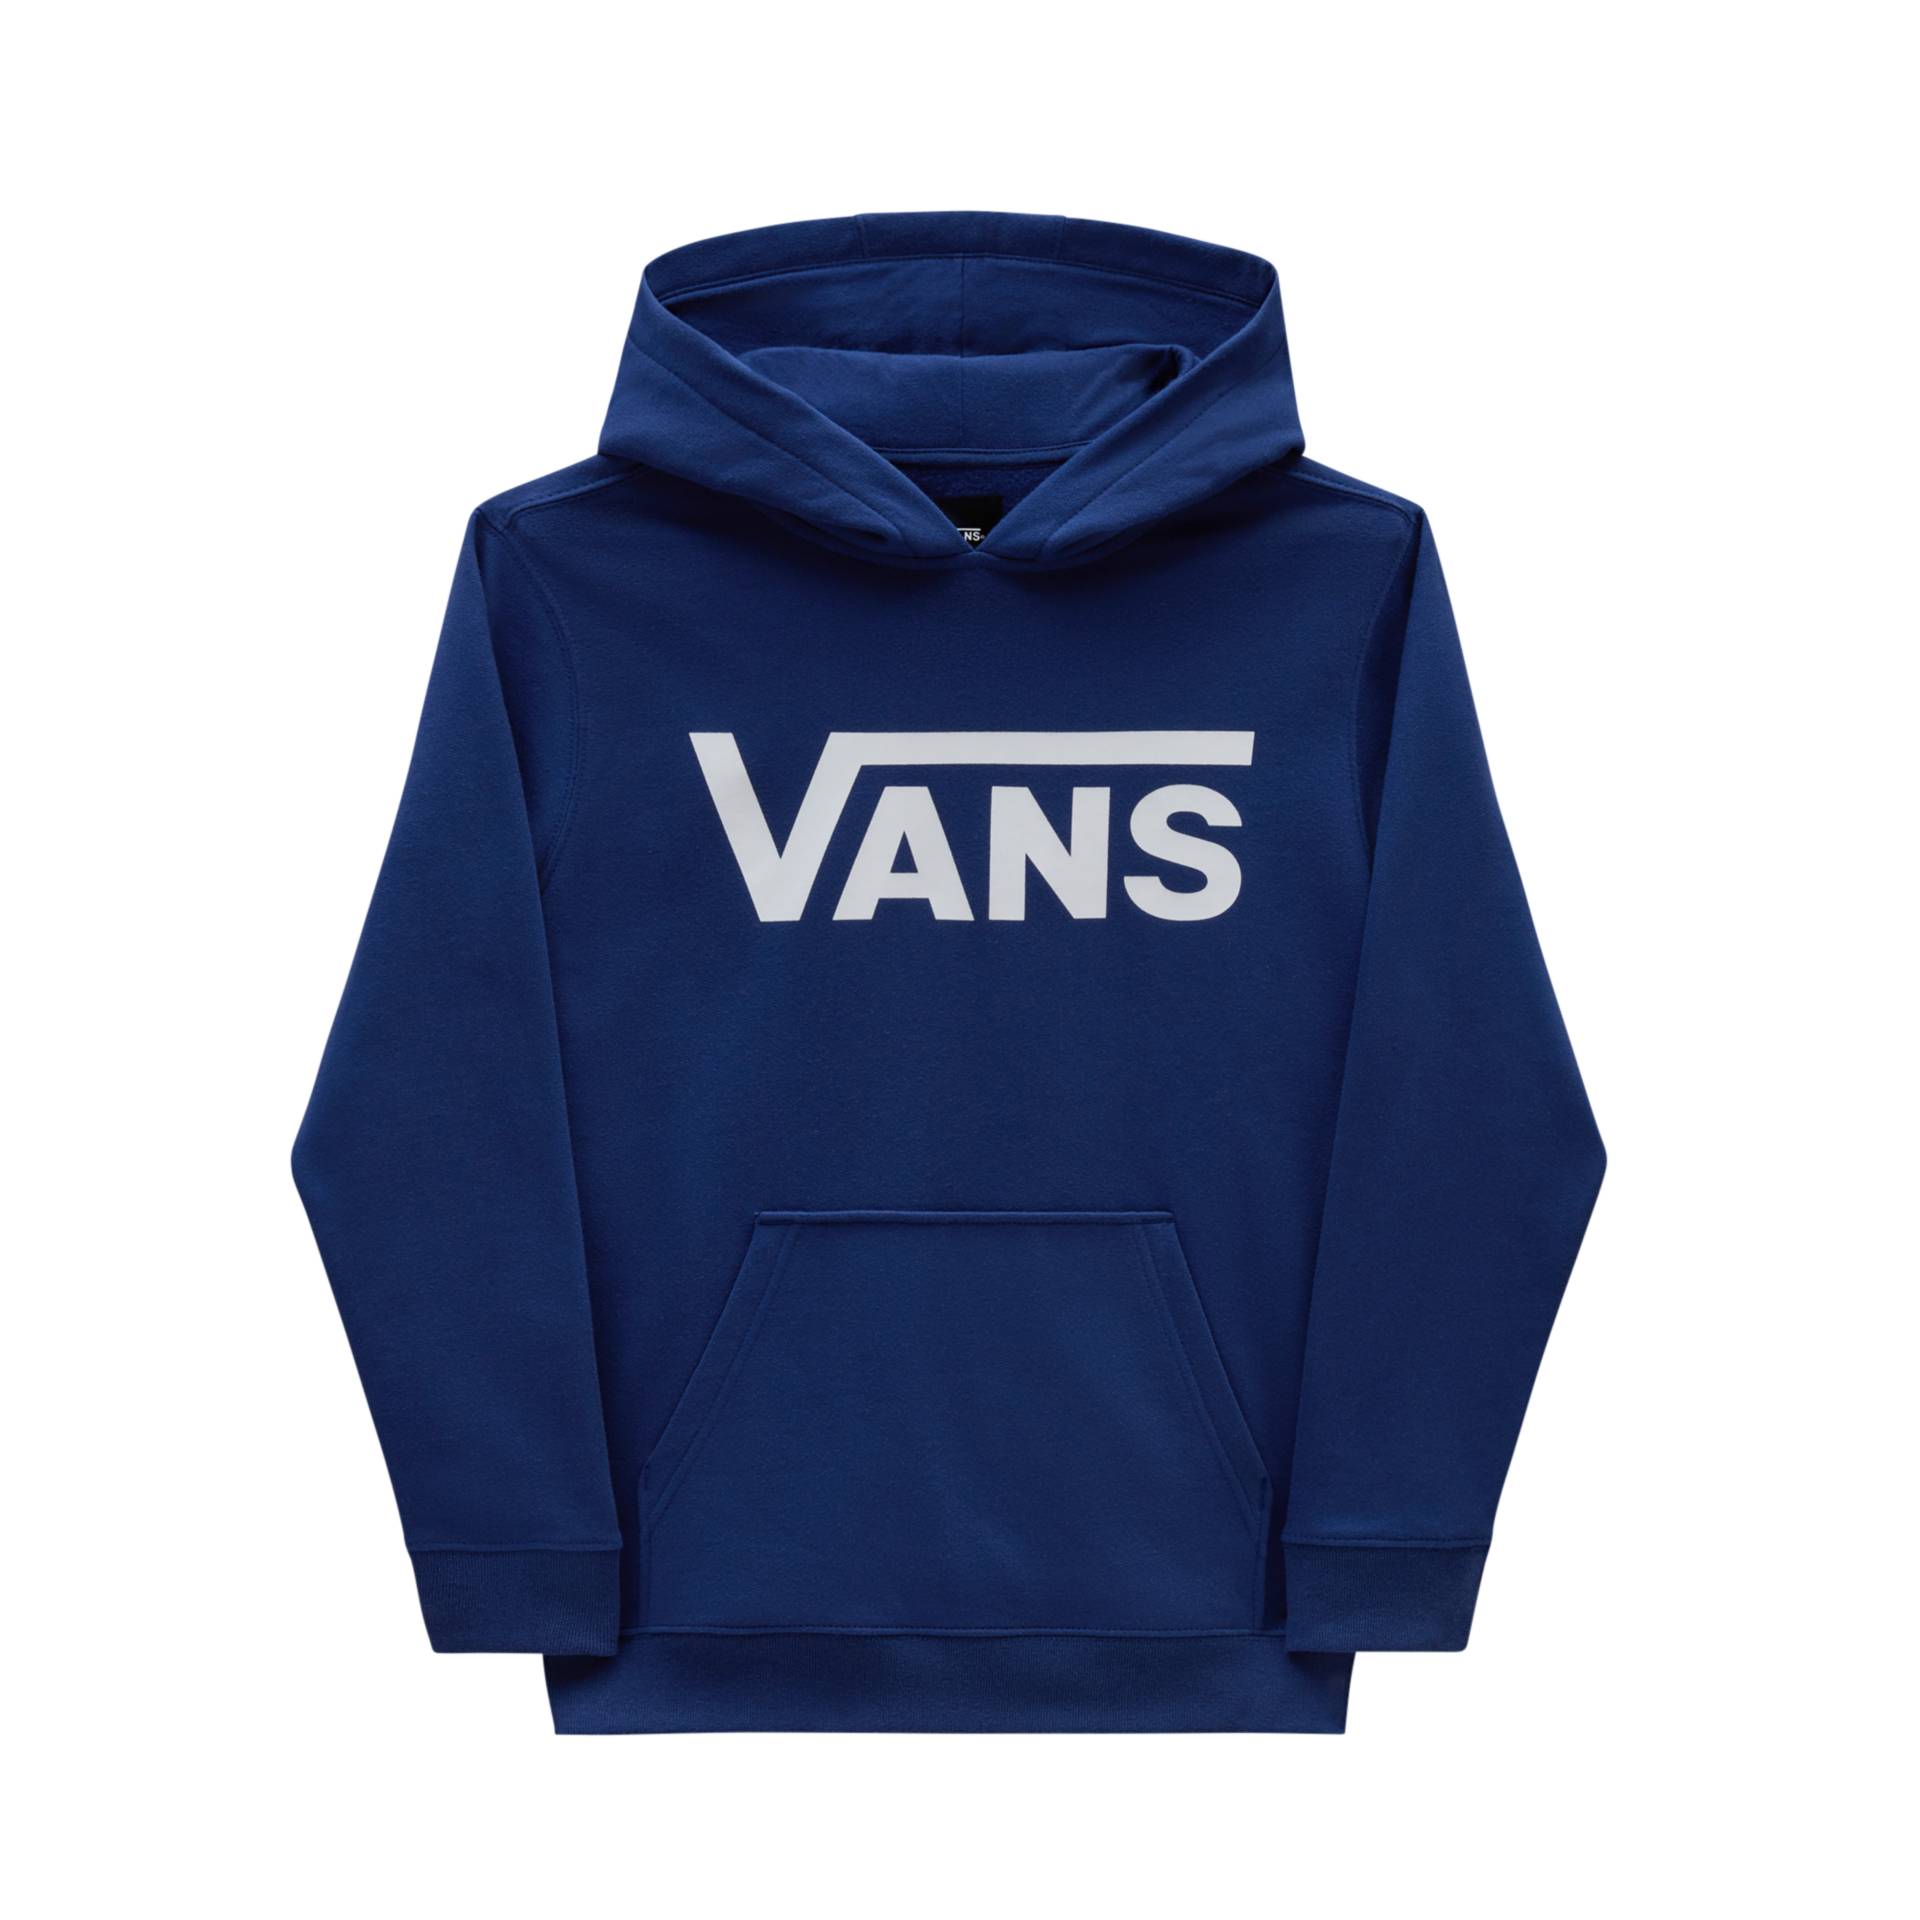 Vans Sweatshirt »VANS CLASSIC PO« von Vans